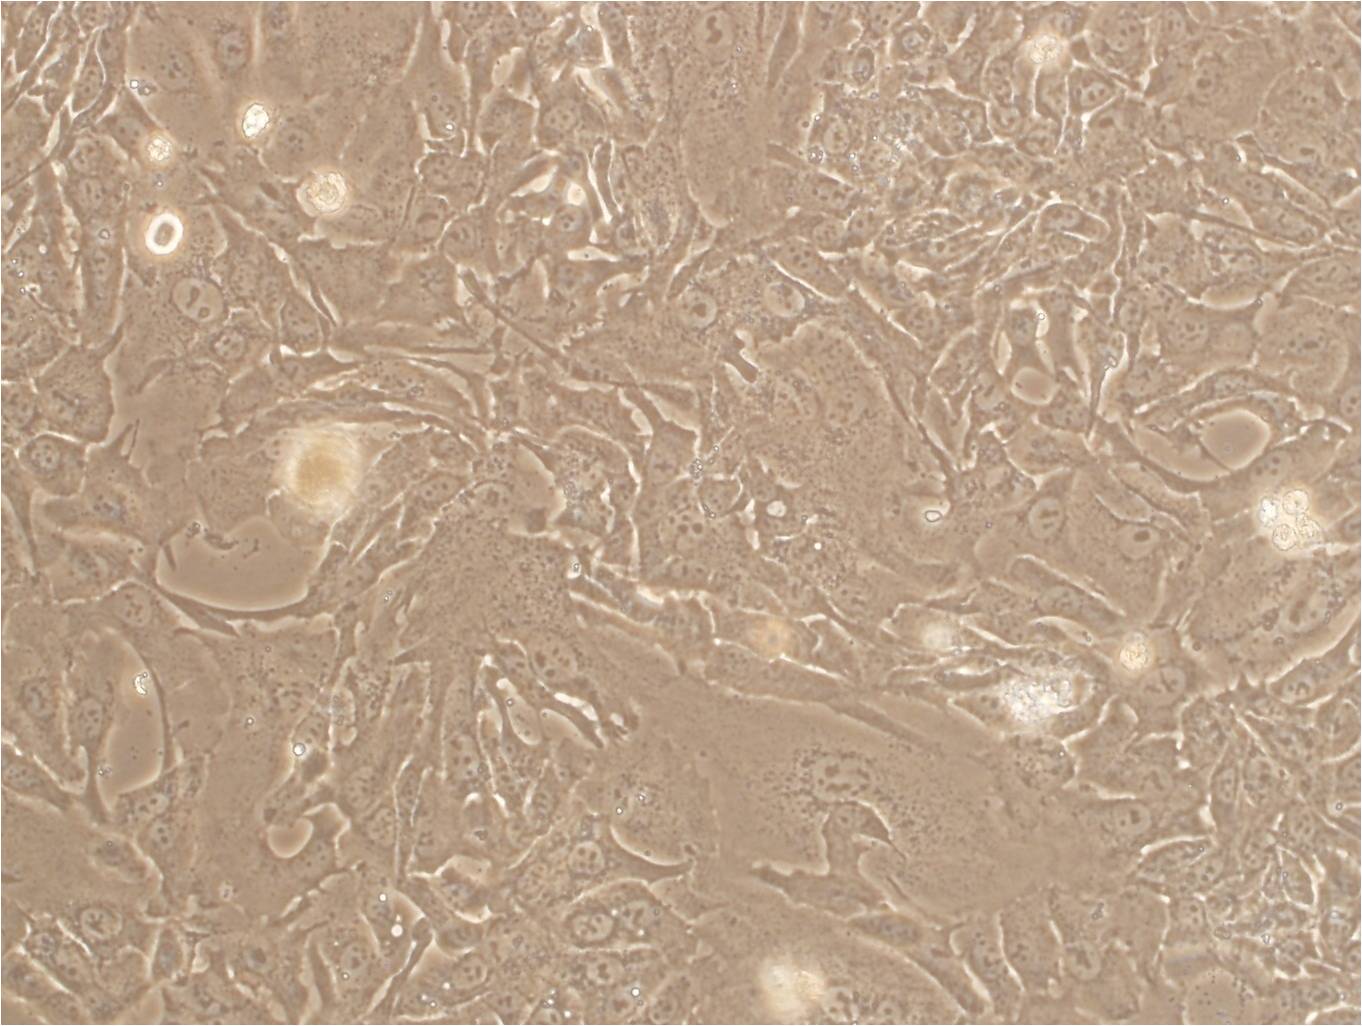 KYSE-270:人食道鳞状细胞癌复苏细胞(提供STR鉴定图谱),KYSE-270